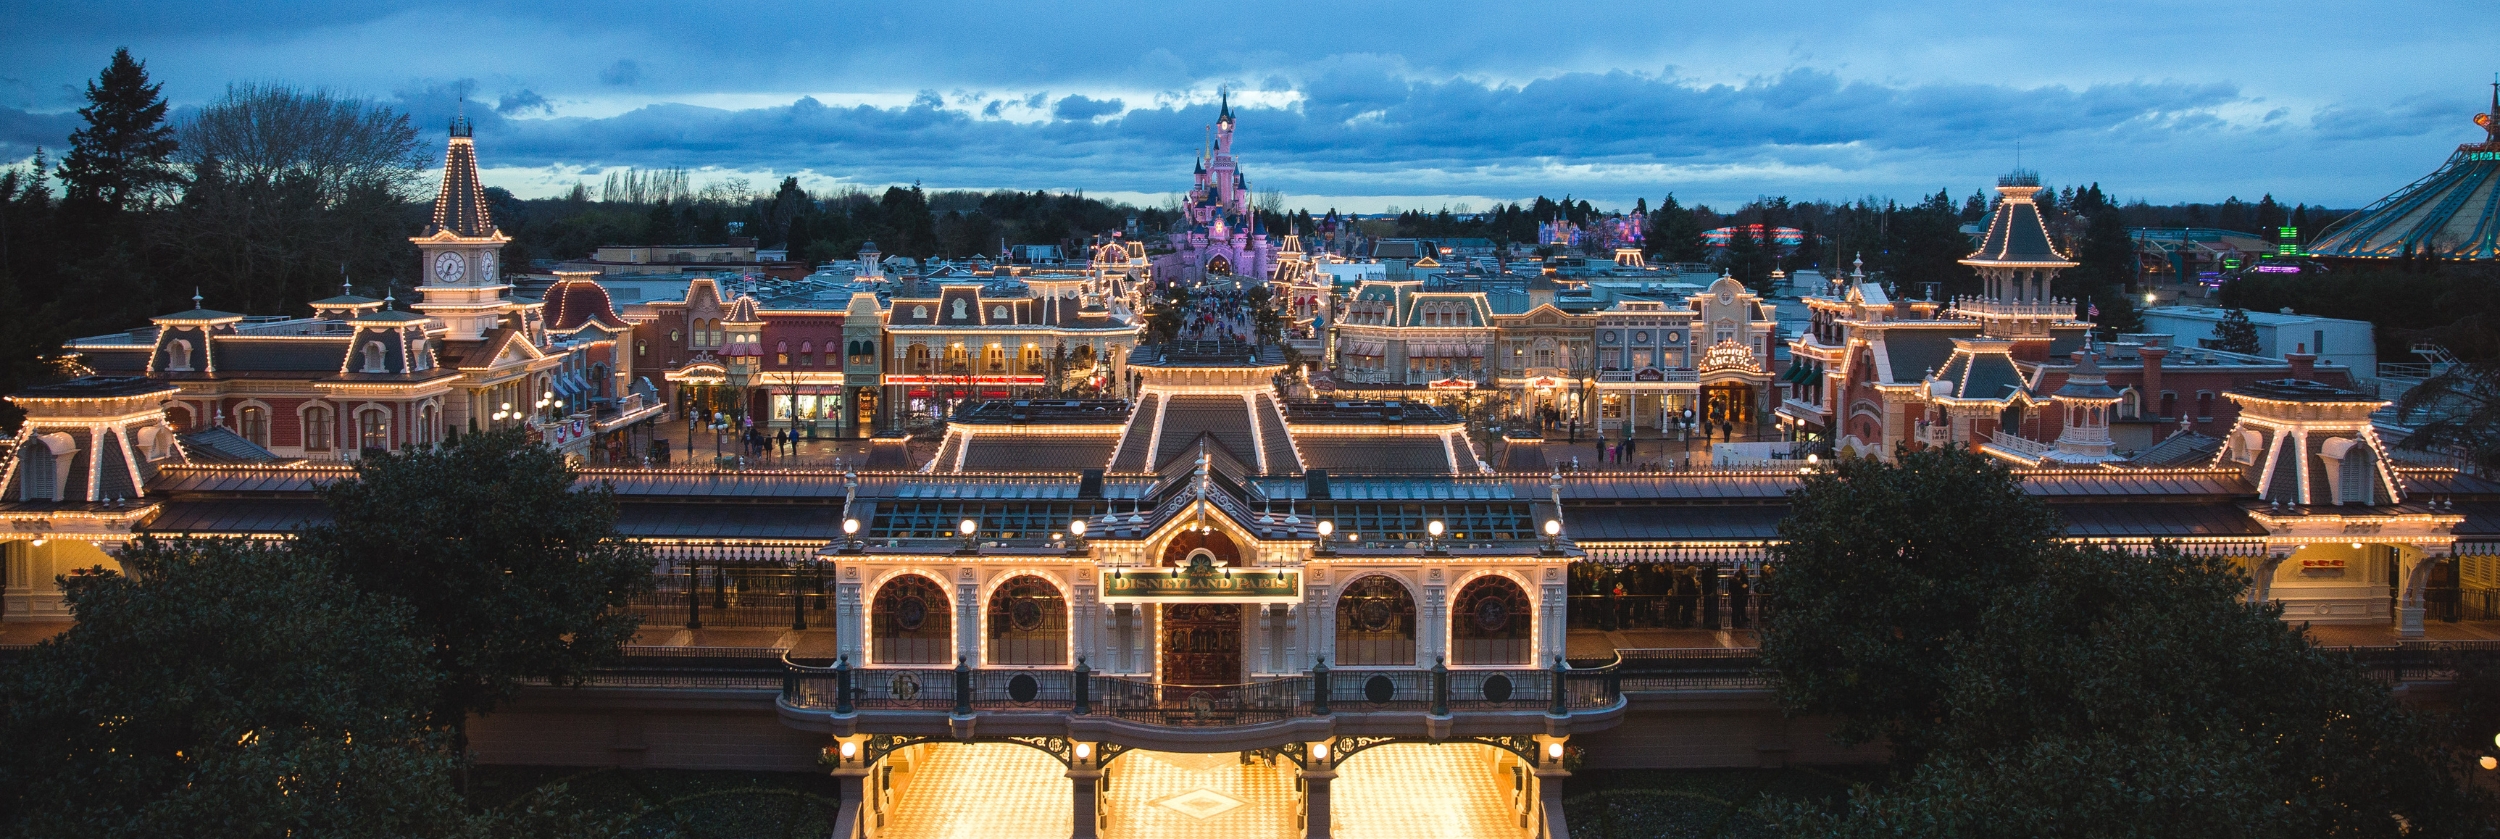 Toegankelijkheid ingang Disneyland park met verlichting